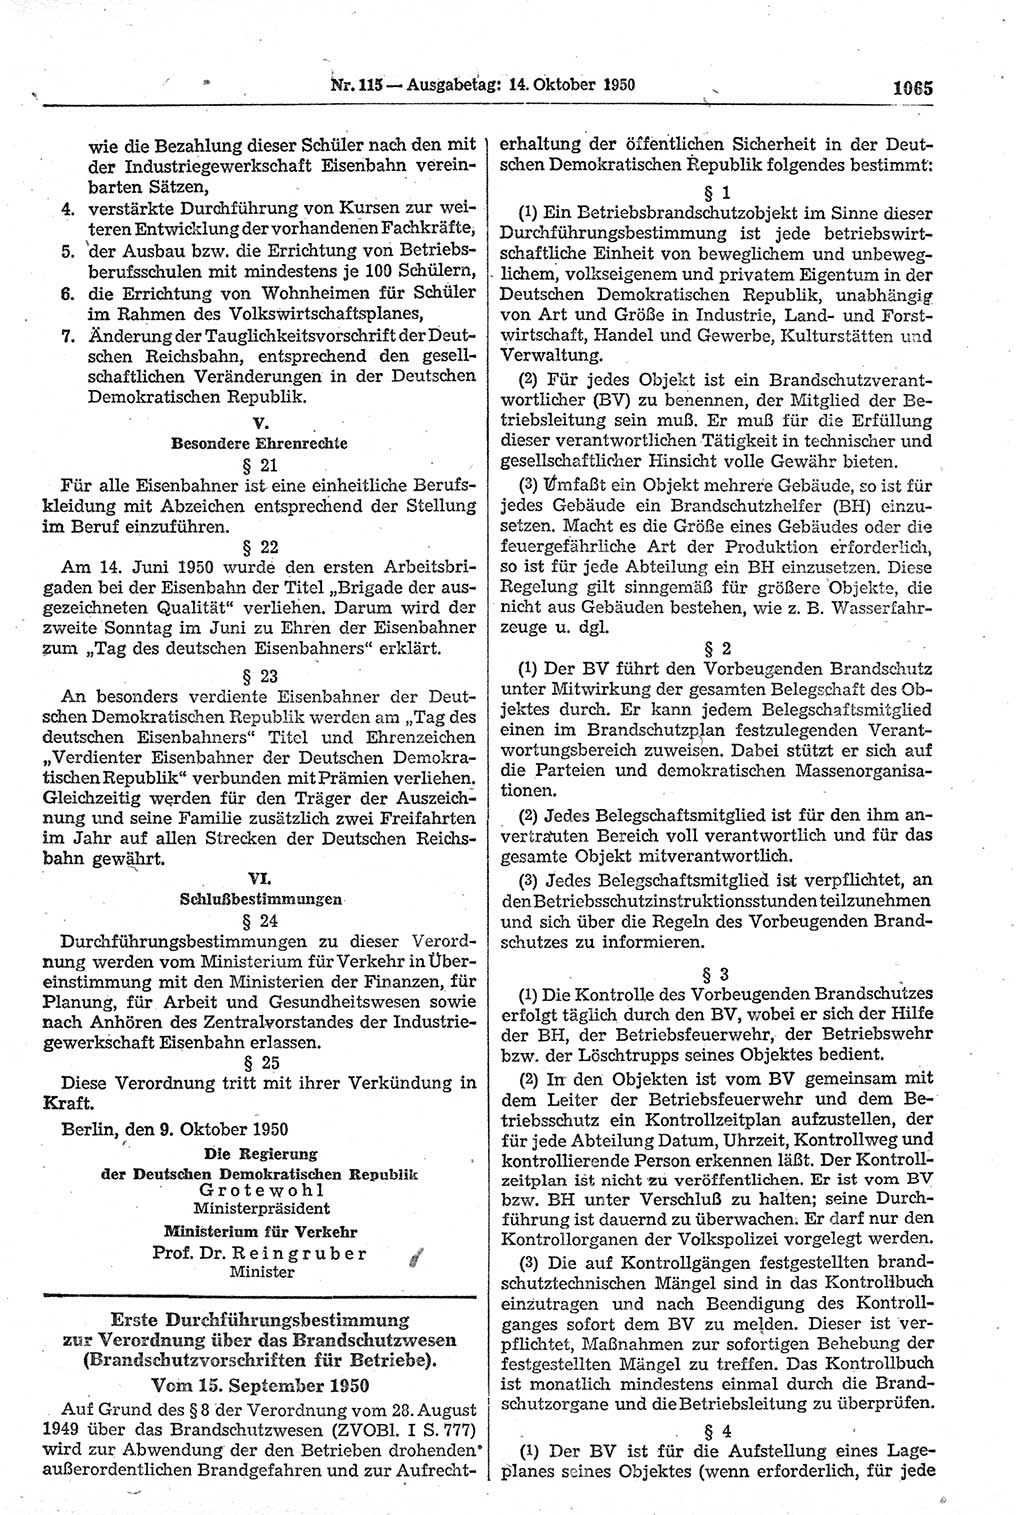 Gesetzblatt (GBl.) der Deutschen Demokratischen Republik (DDR) 1950, Seite 1065 (GBl. DDR 1950, S. 1065)